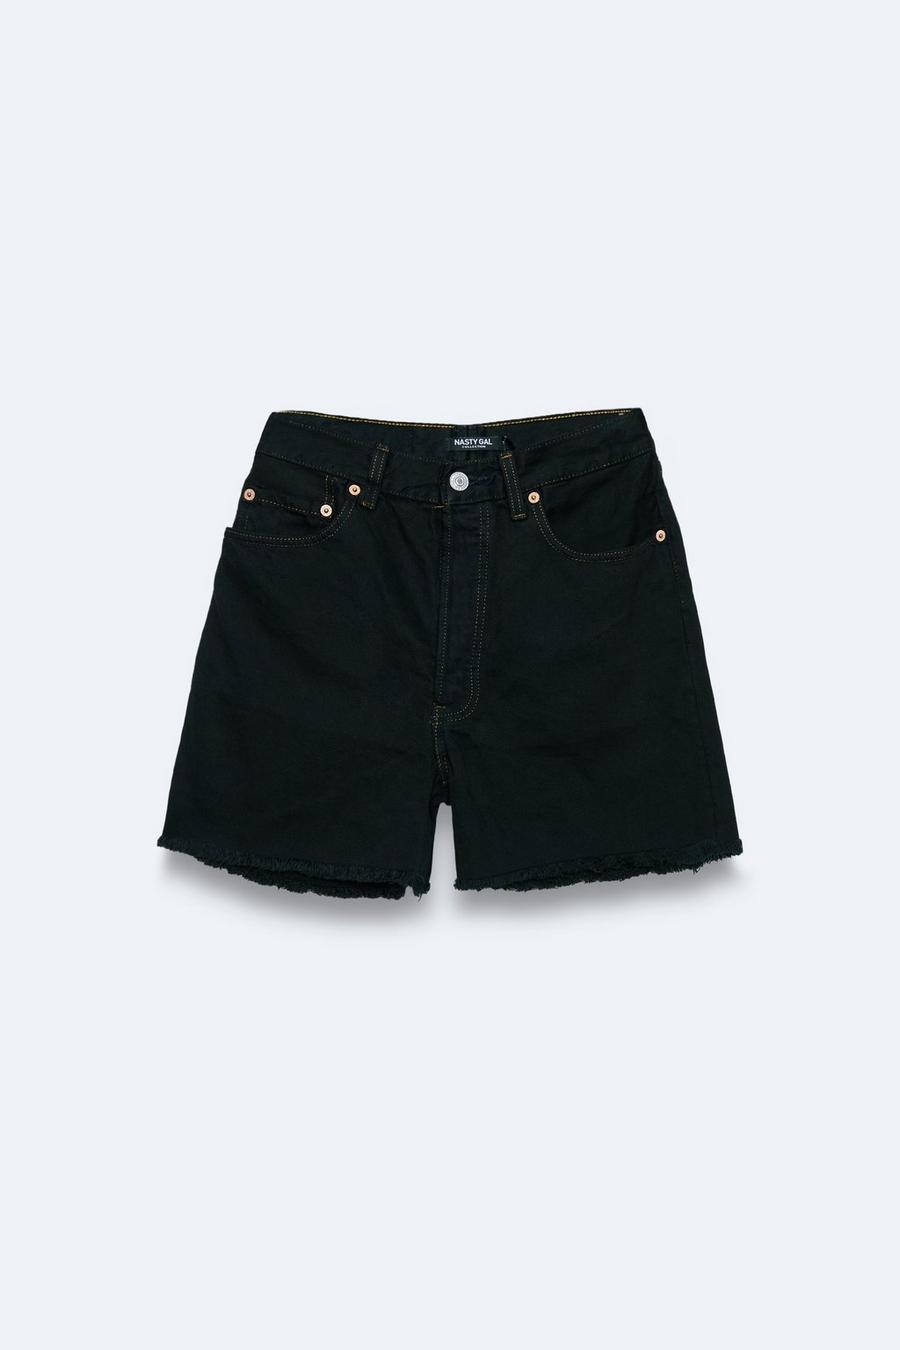 Black Vintage Reclaimed Branded Denim Shorts